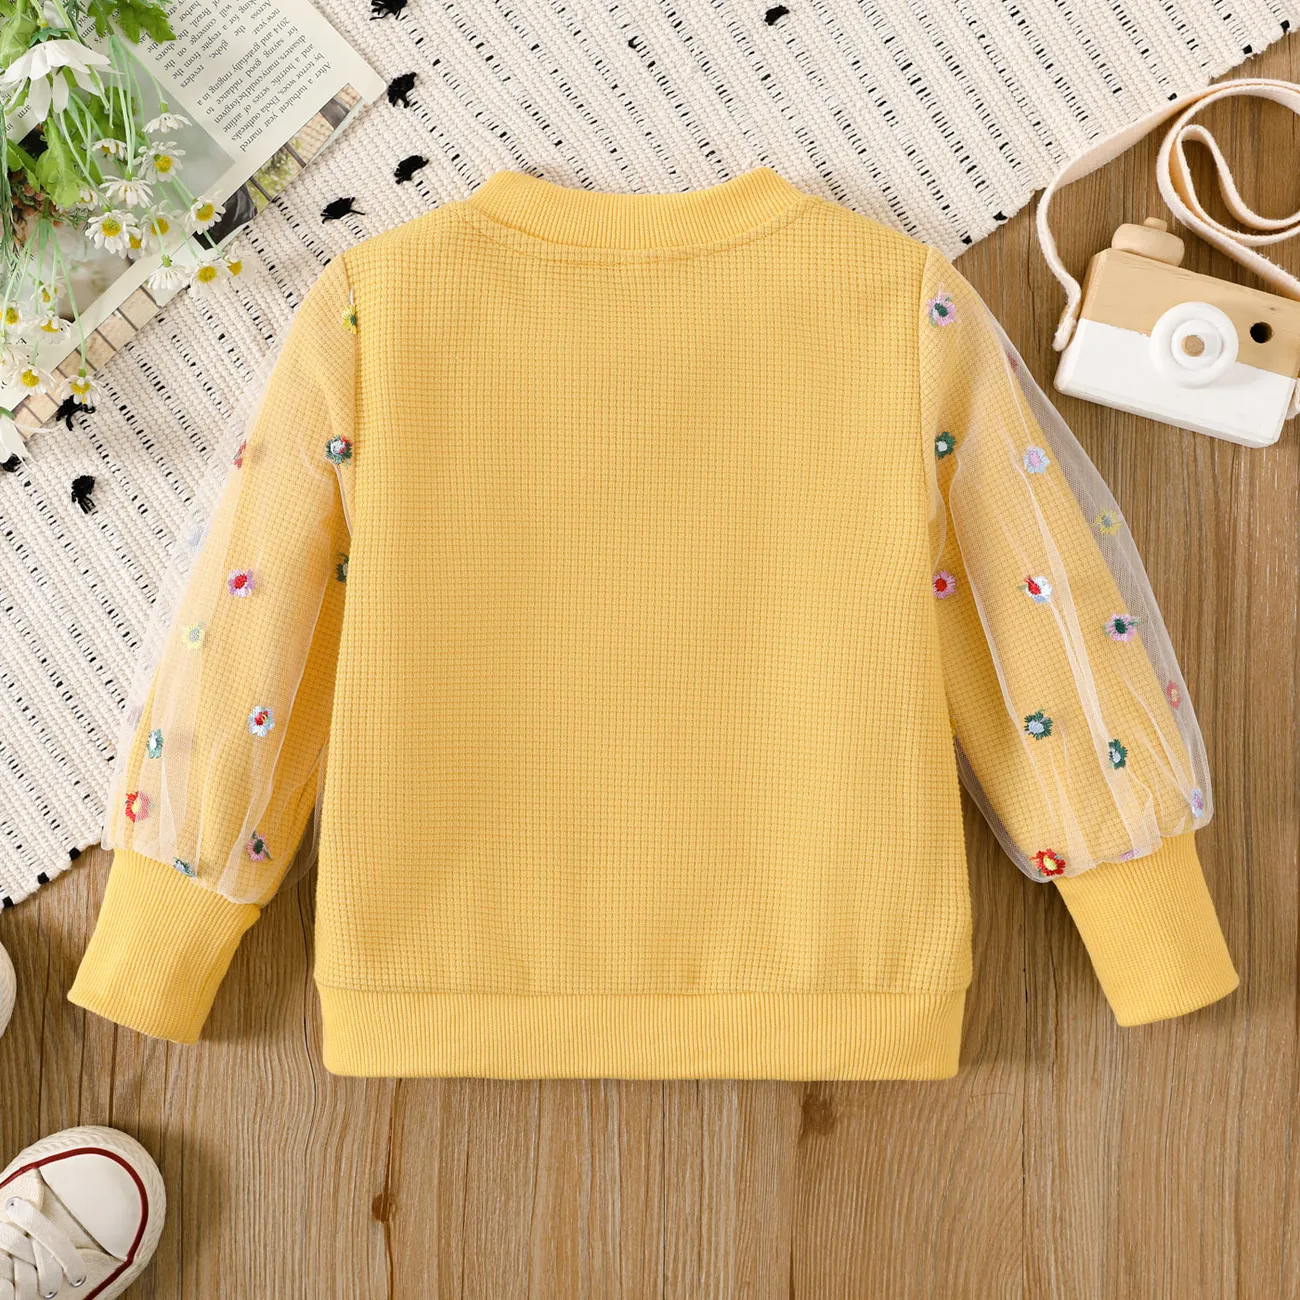 Criança Menina Costuras de tecido Bonito Blusões e casacos Amarelo big image 1